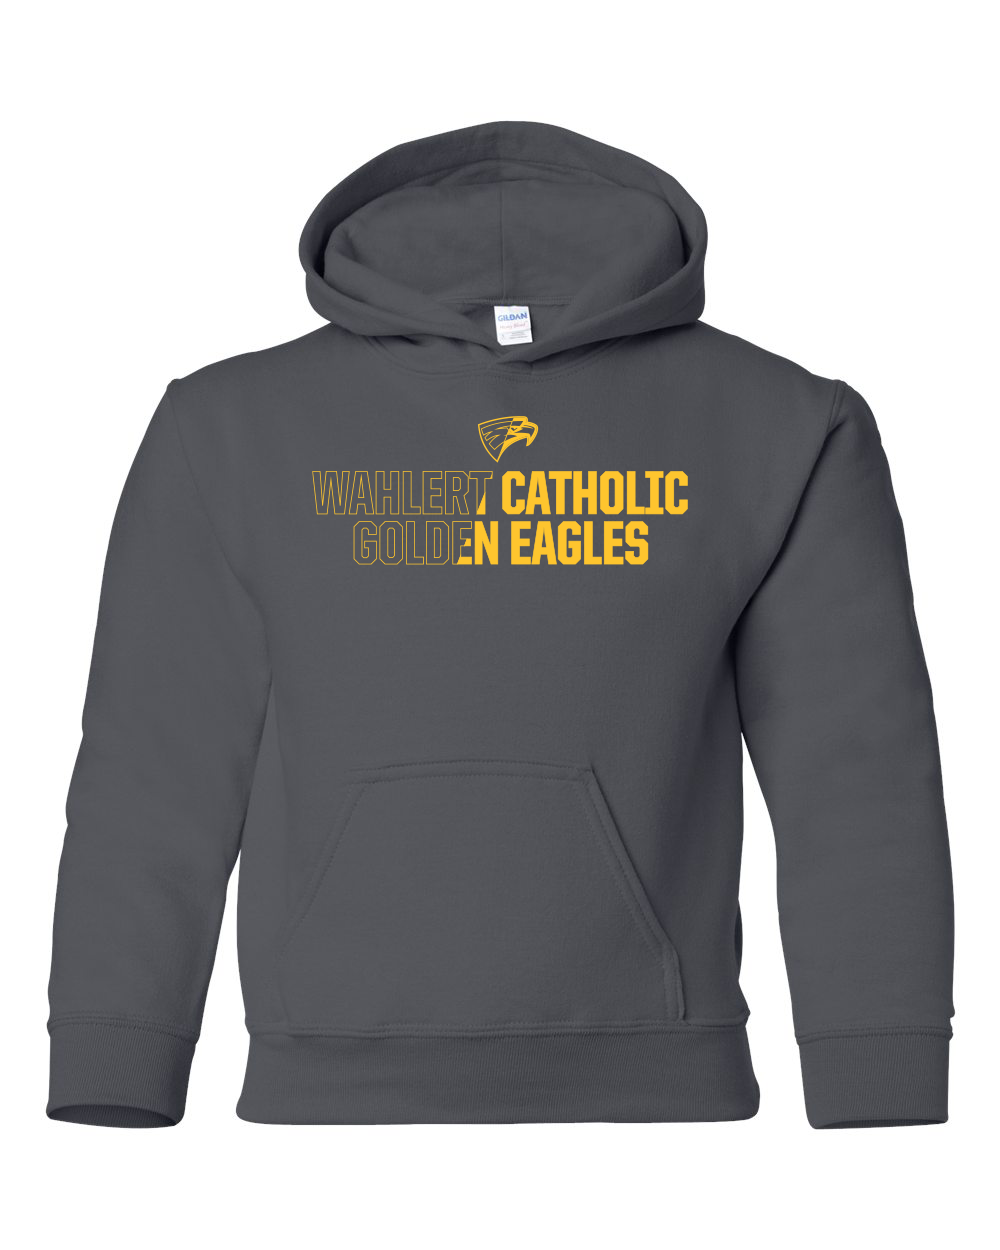 18500B - WAHLERT CATHOLIC 2 TONED SPIRIT - Youth Heavy Blend Hooded Sweatshirt